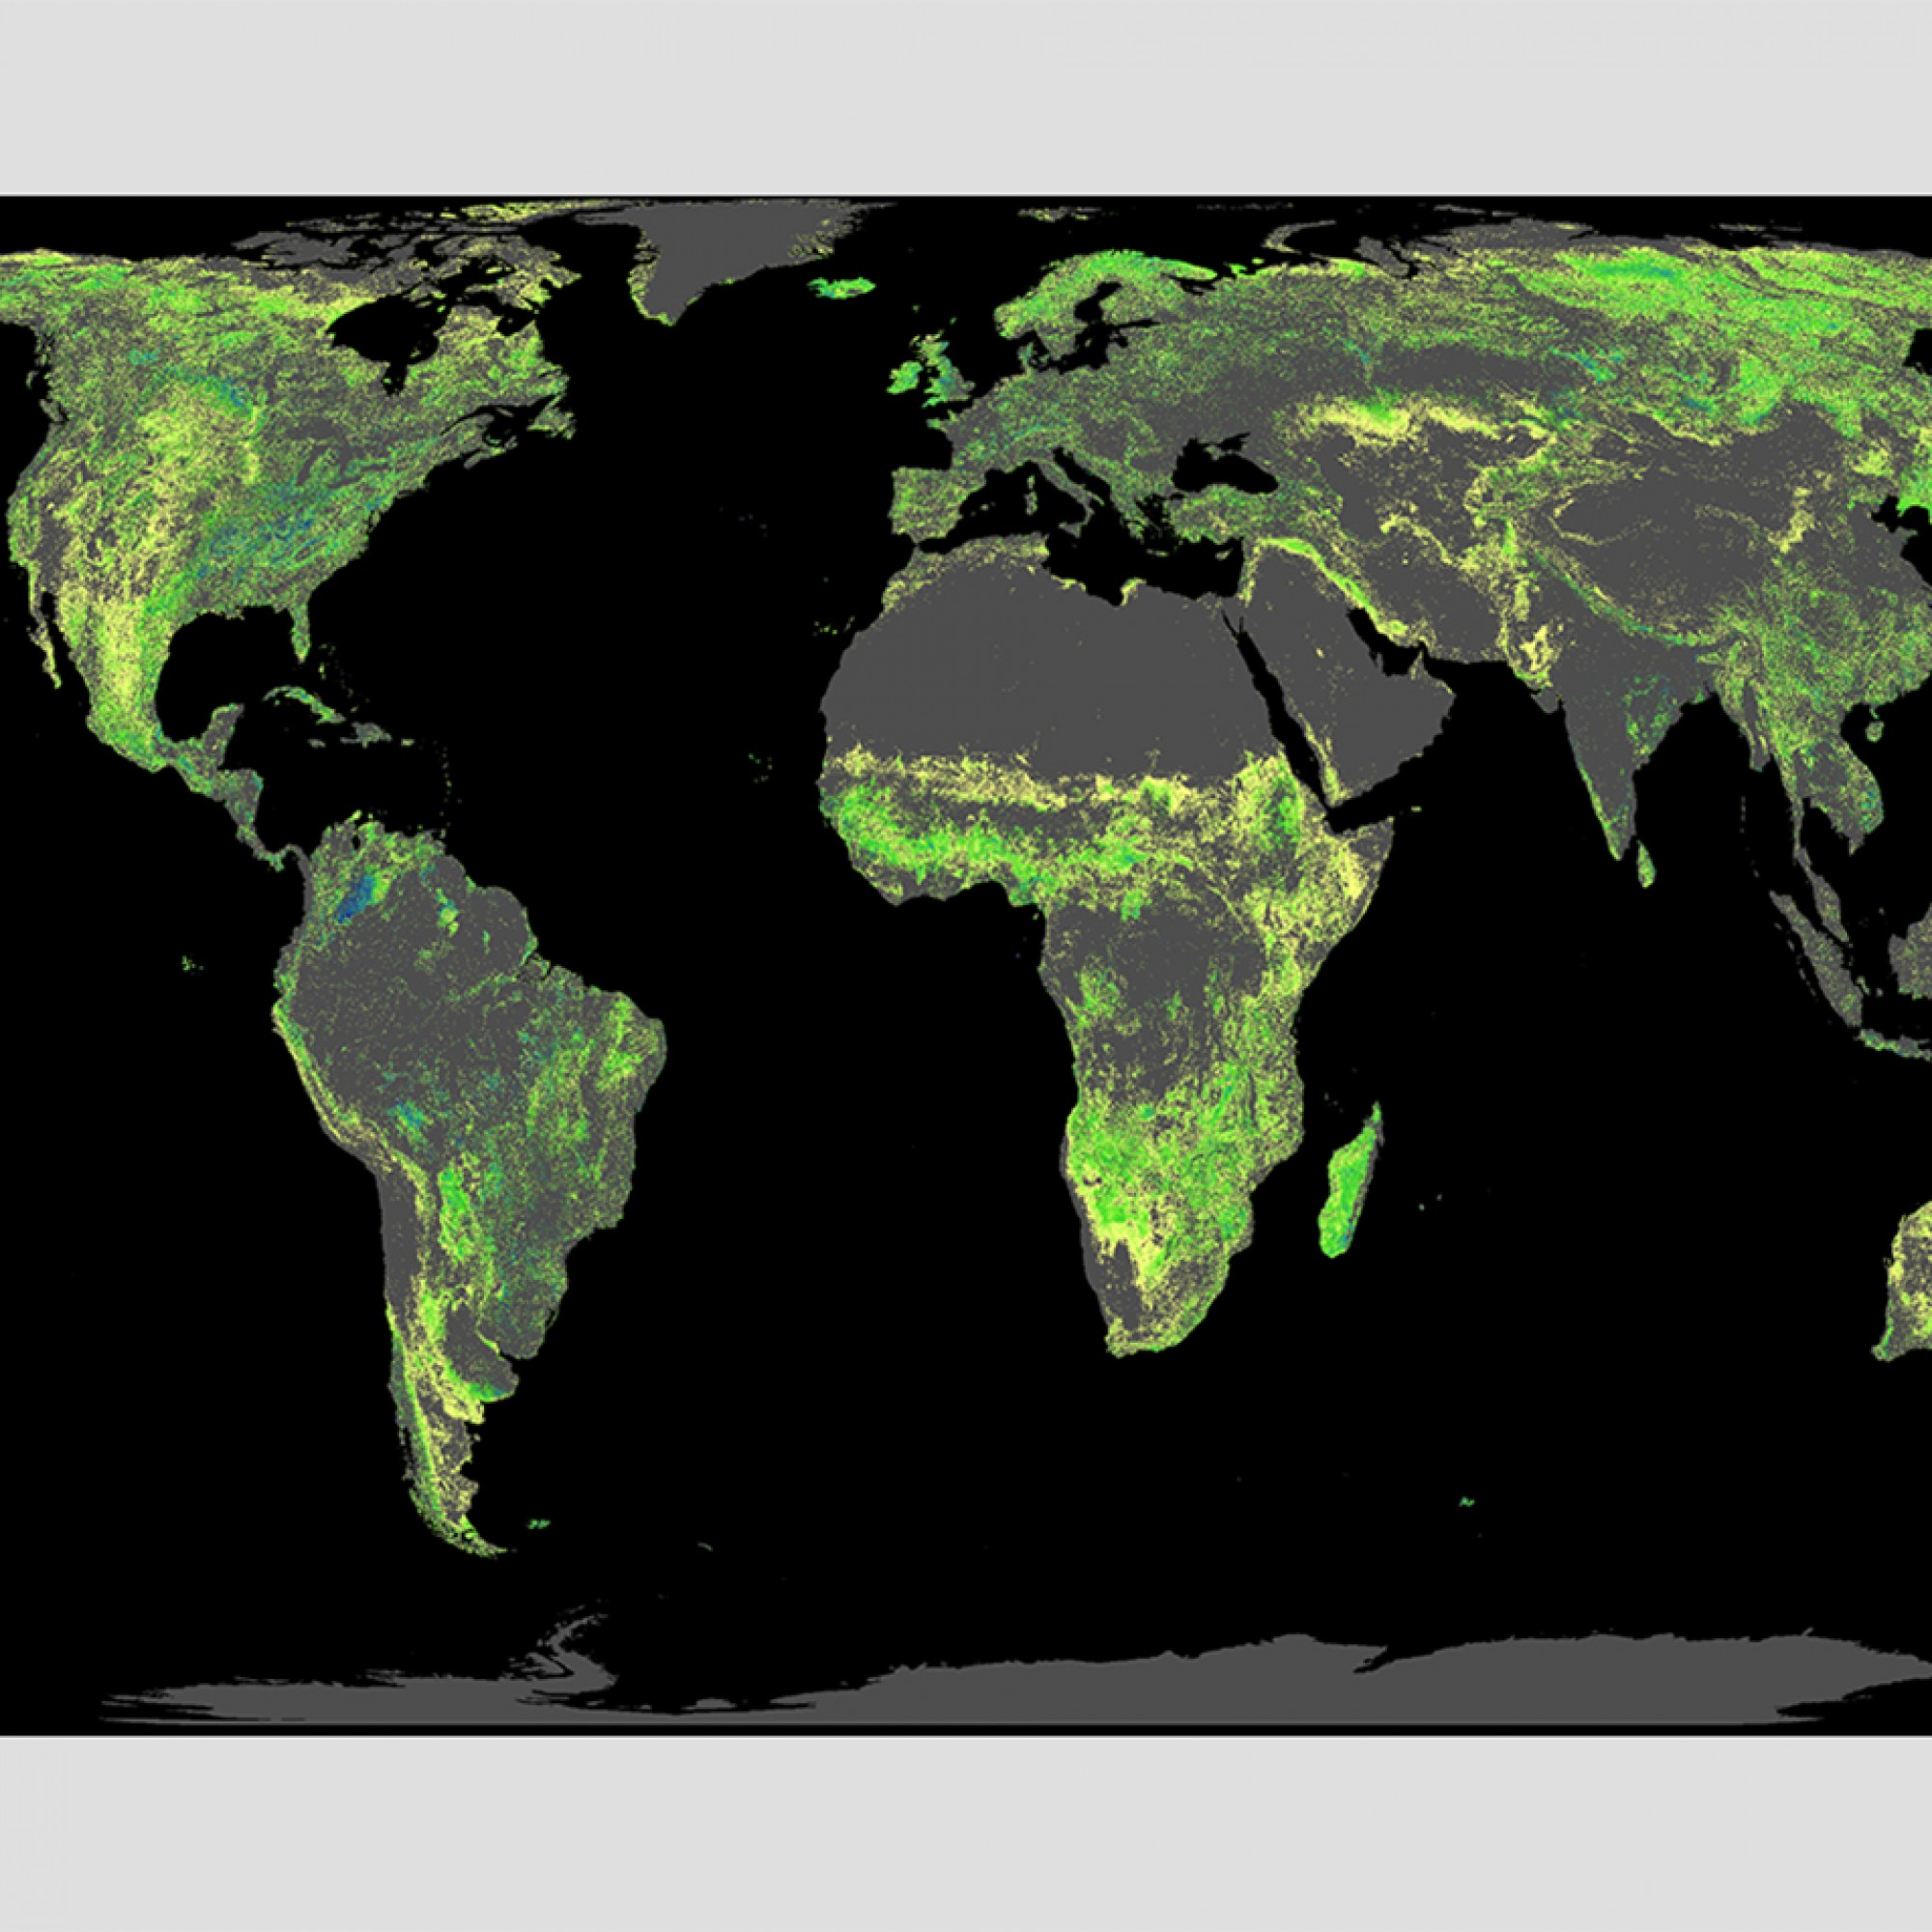 Diese Fläche ist für die Wiederaufforstung von Wäldern verfügbar (ohne bestehende Wälder, Landwirtschaftsflächen, Wüsten und Städte).